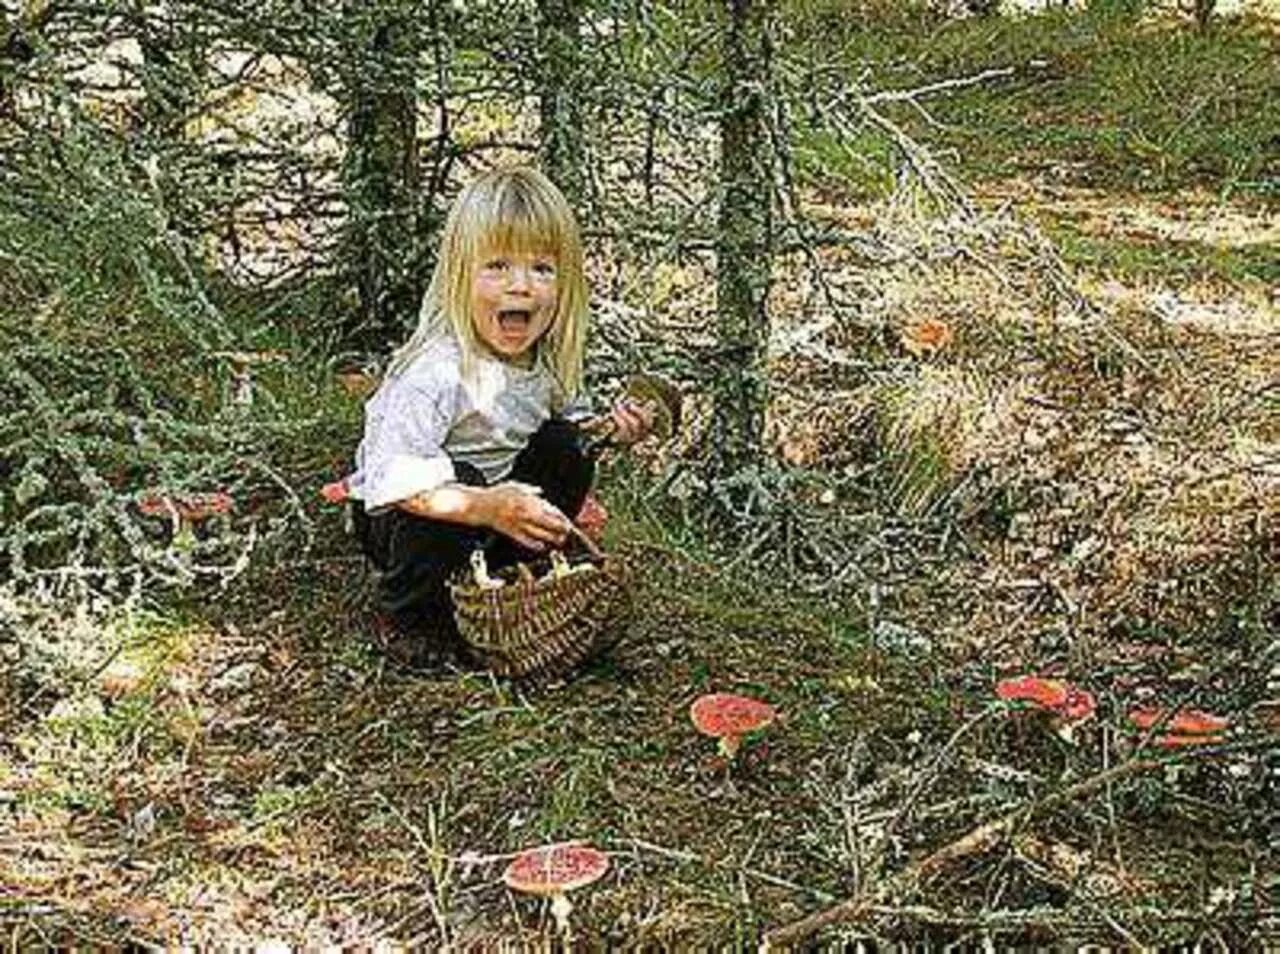 Дети собирают грибы в лесу. Девочка в лесу. Девочка потерялась в лесу. Девочка в лесу собирает грибы.